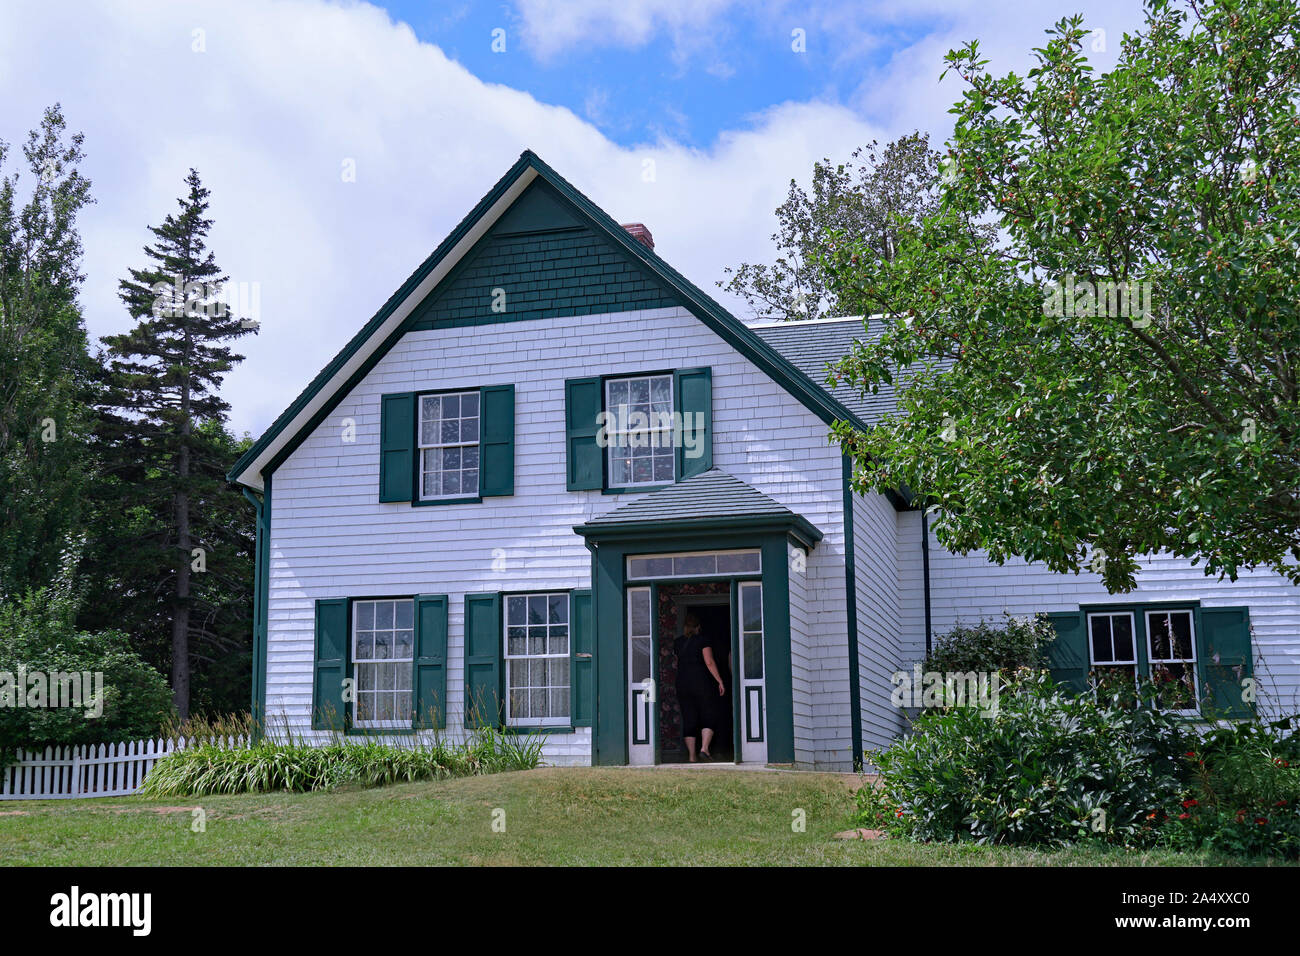 PRINCE EDWARD ISLAND, KANADA - AUGUST 2019: Das Haus, in dem die geliebte Charakter Anne von Green Gables sich befand, ist haltbar und offen zu besuchen Stockfoto